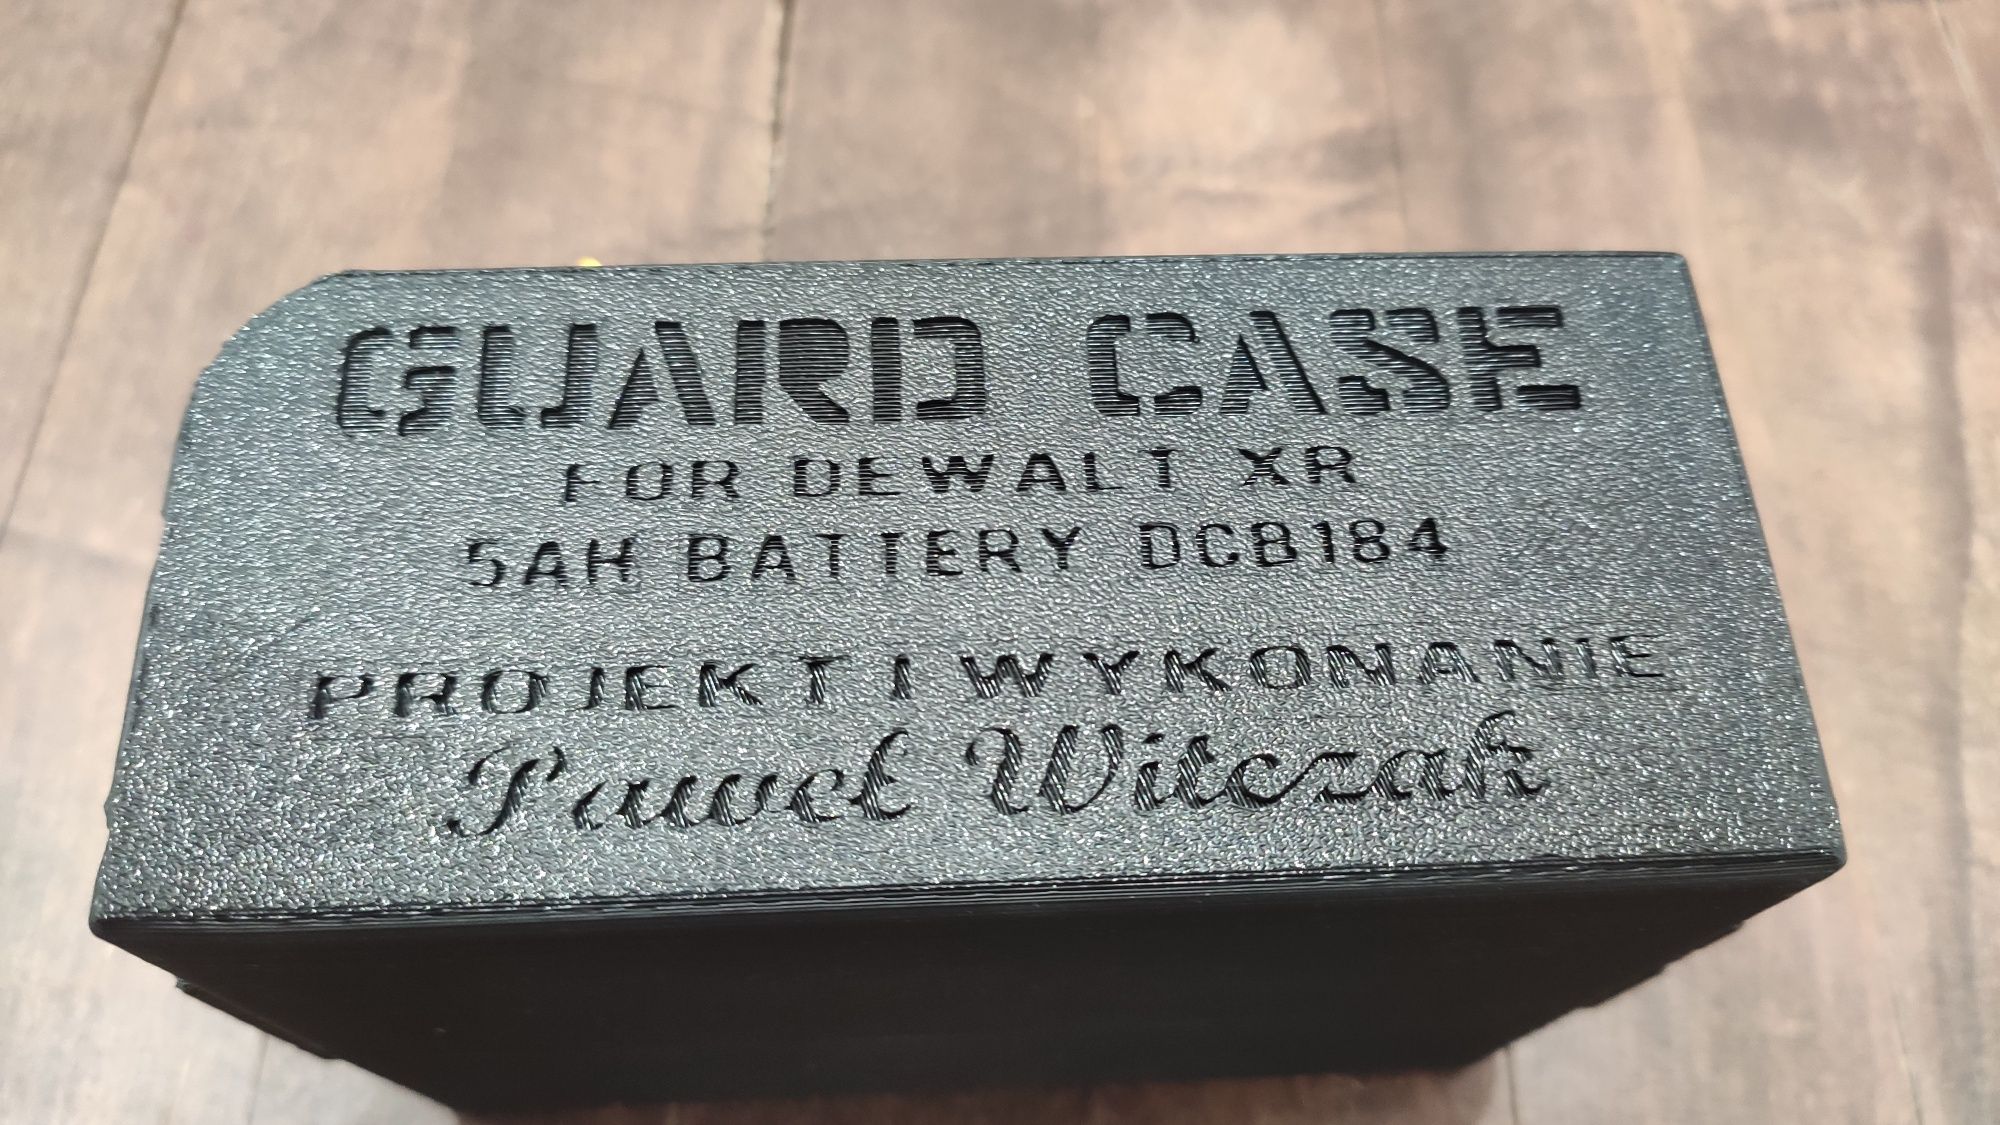 Obudowa ochronna baterii DeWalt XR 5ah Guard Case DCB184.